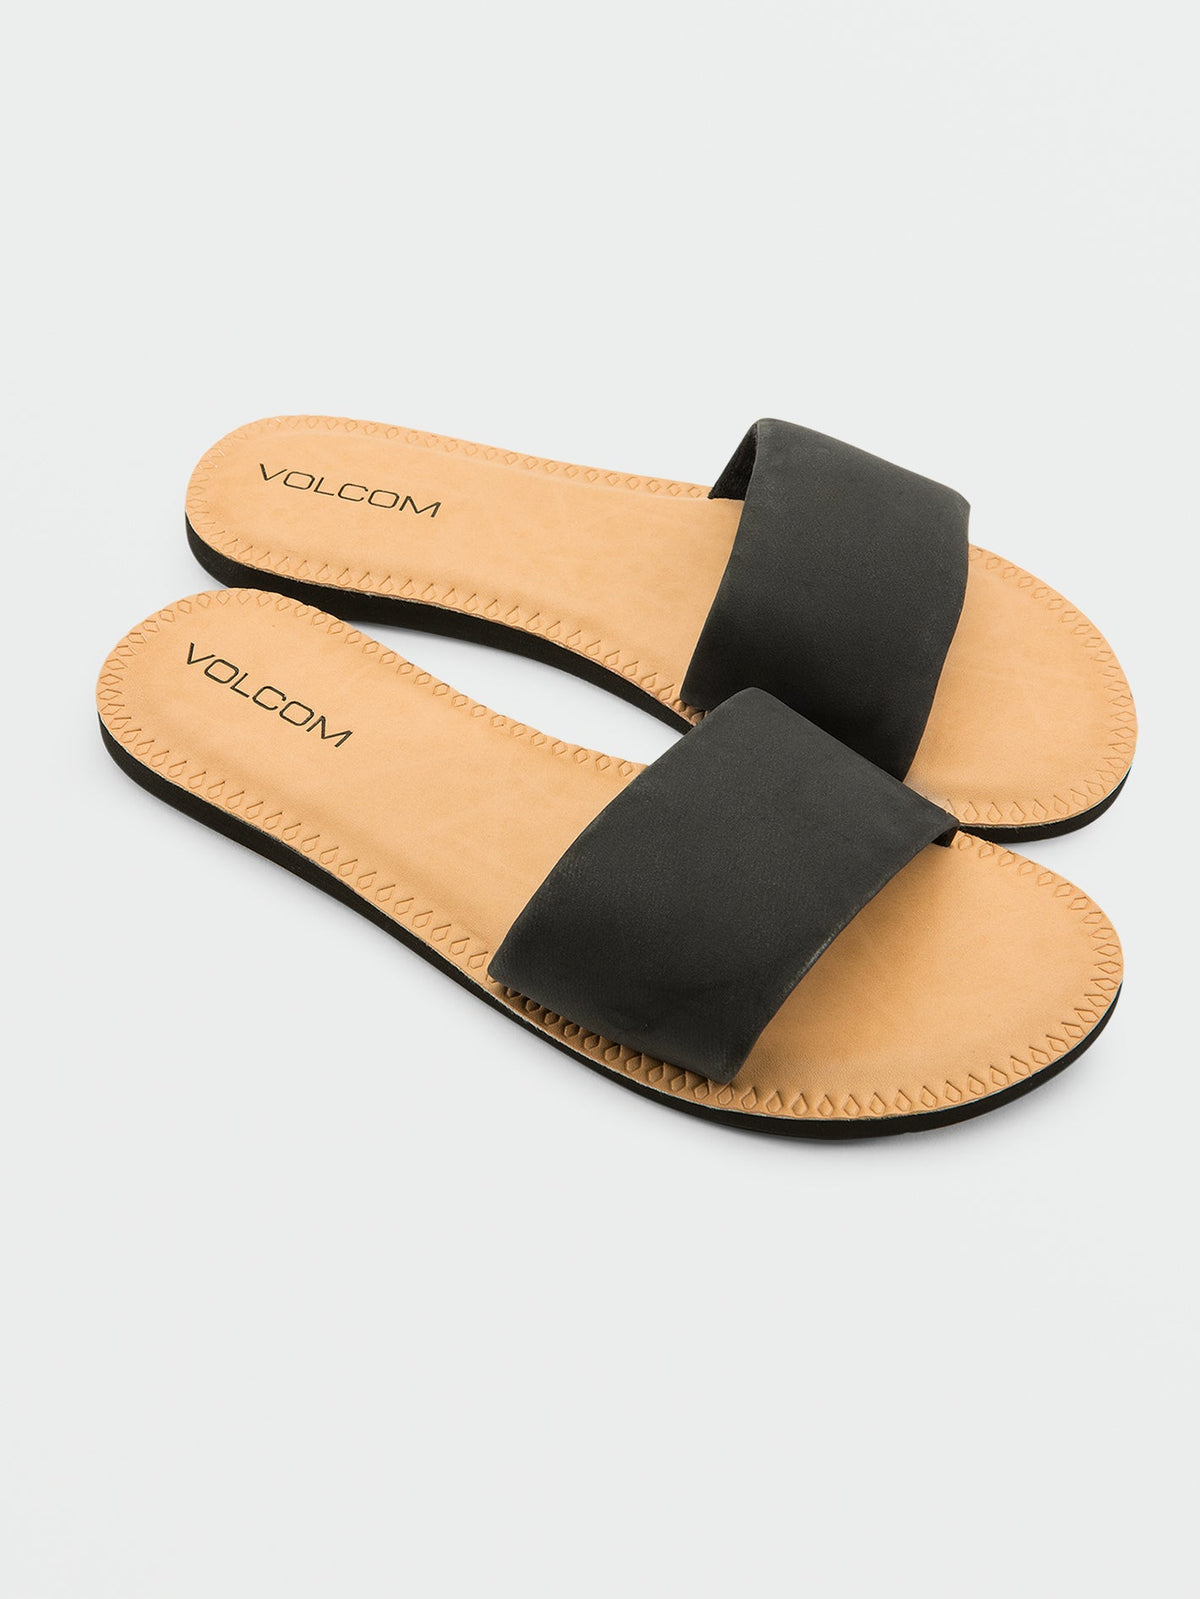 Volcom Simple Slide Women's Sandals Black